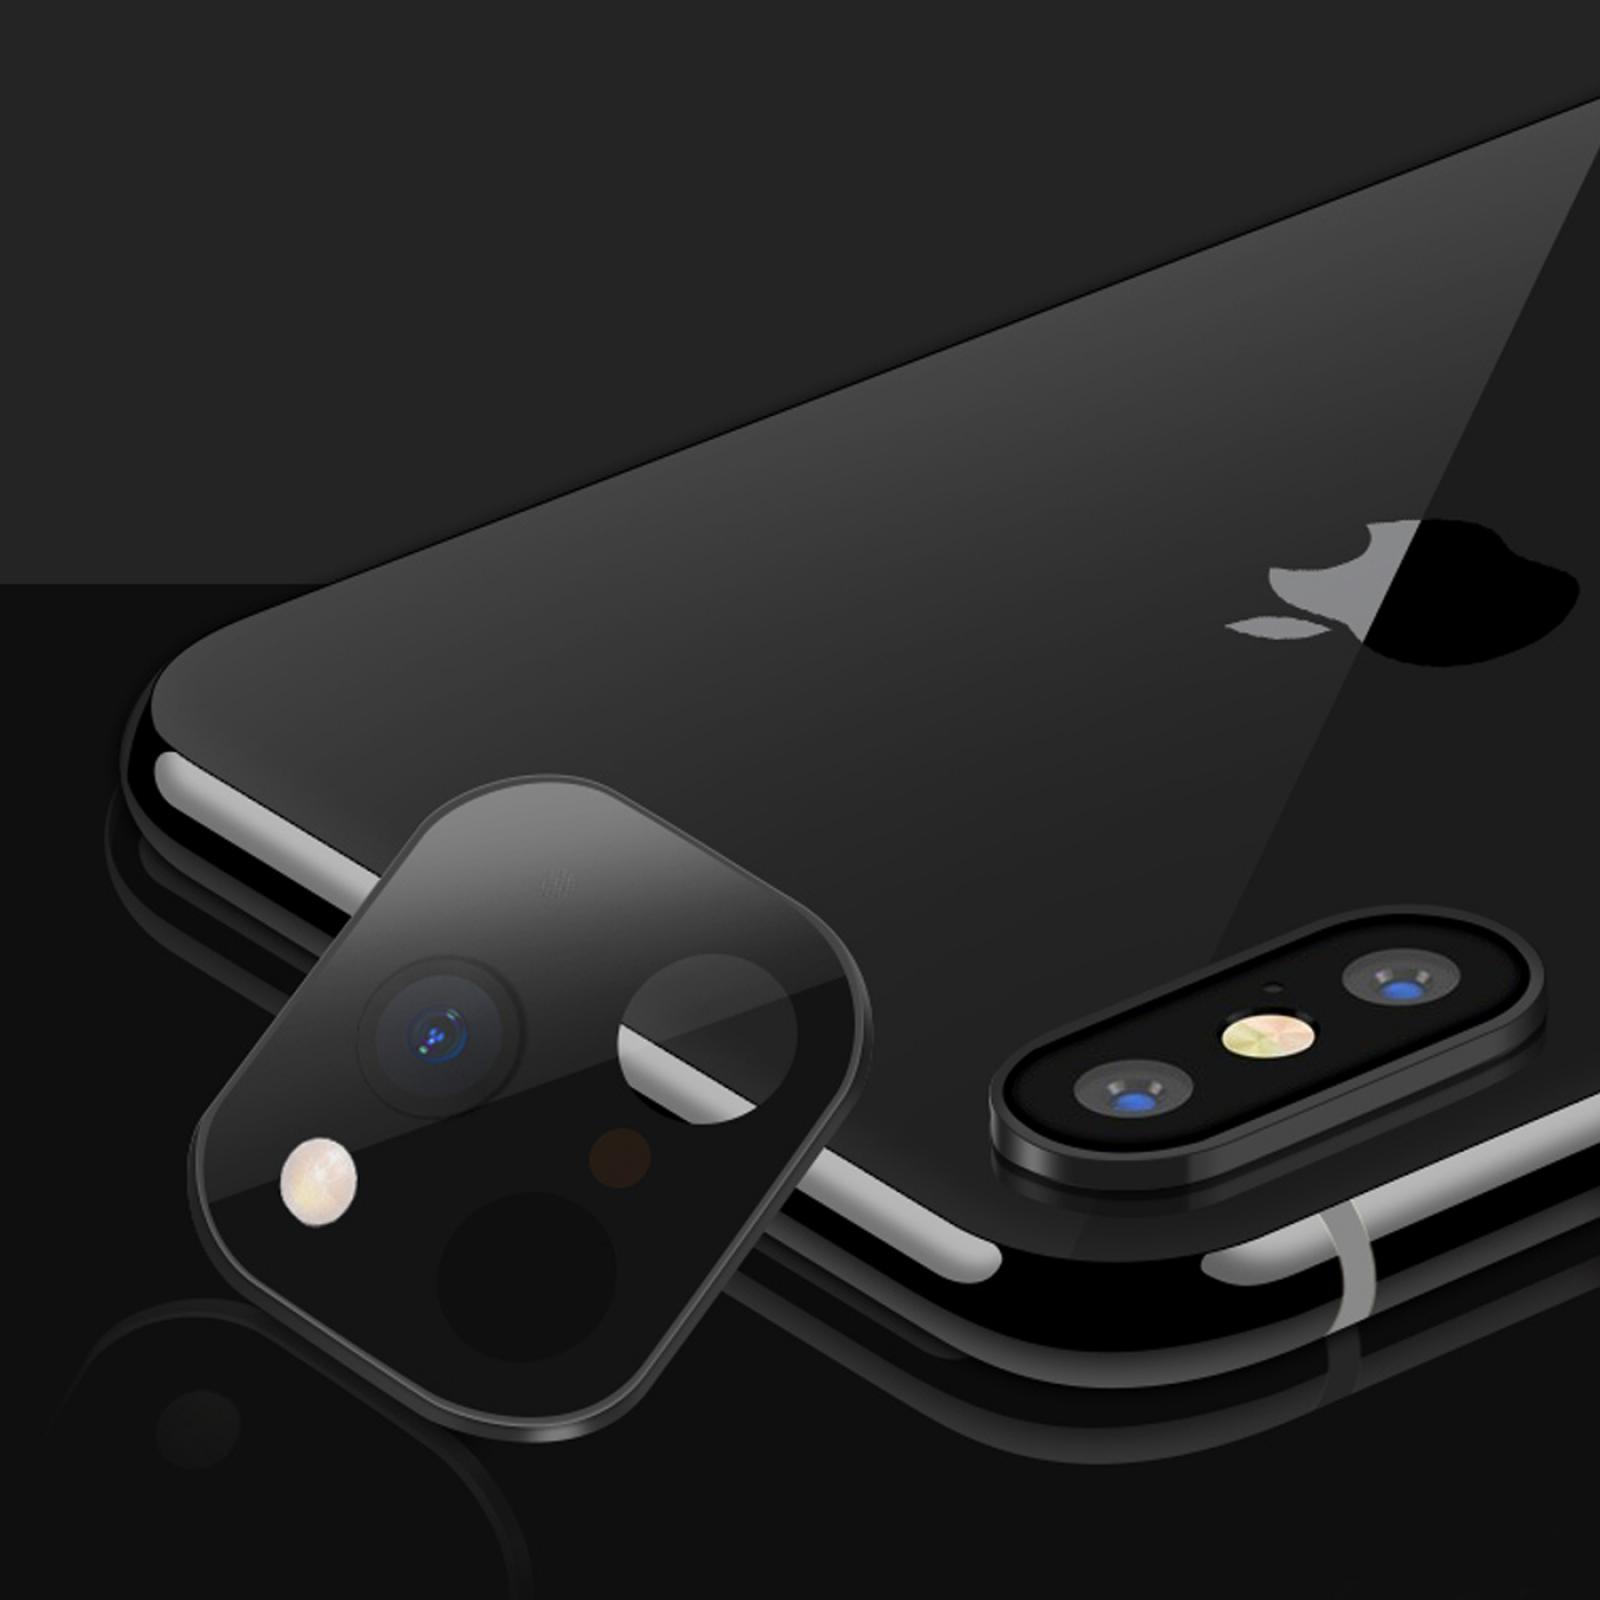 Kamera-Schutzglas für Apple iPhone 11, Schwarz